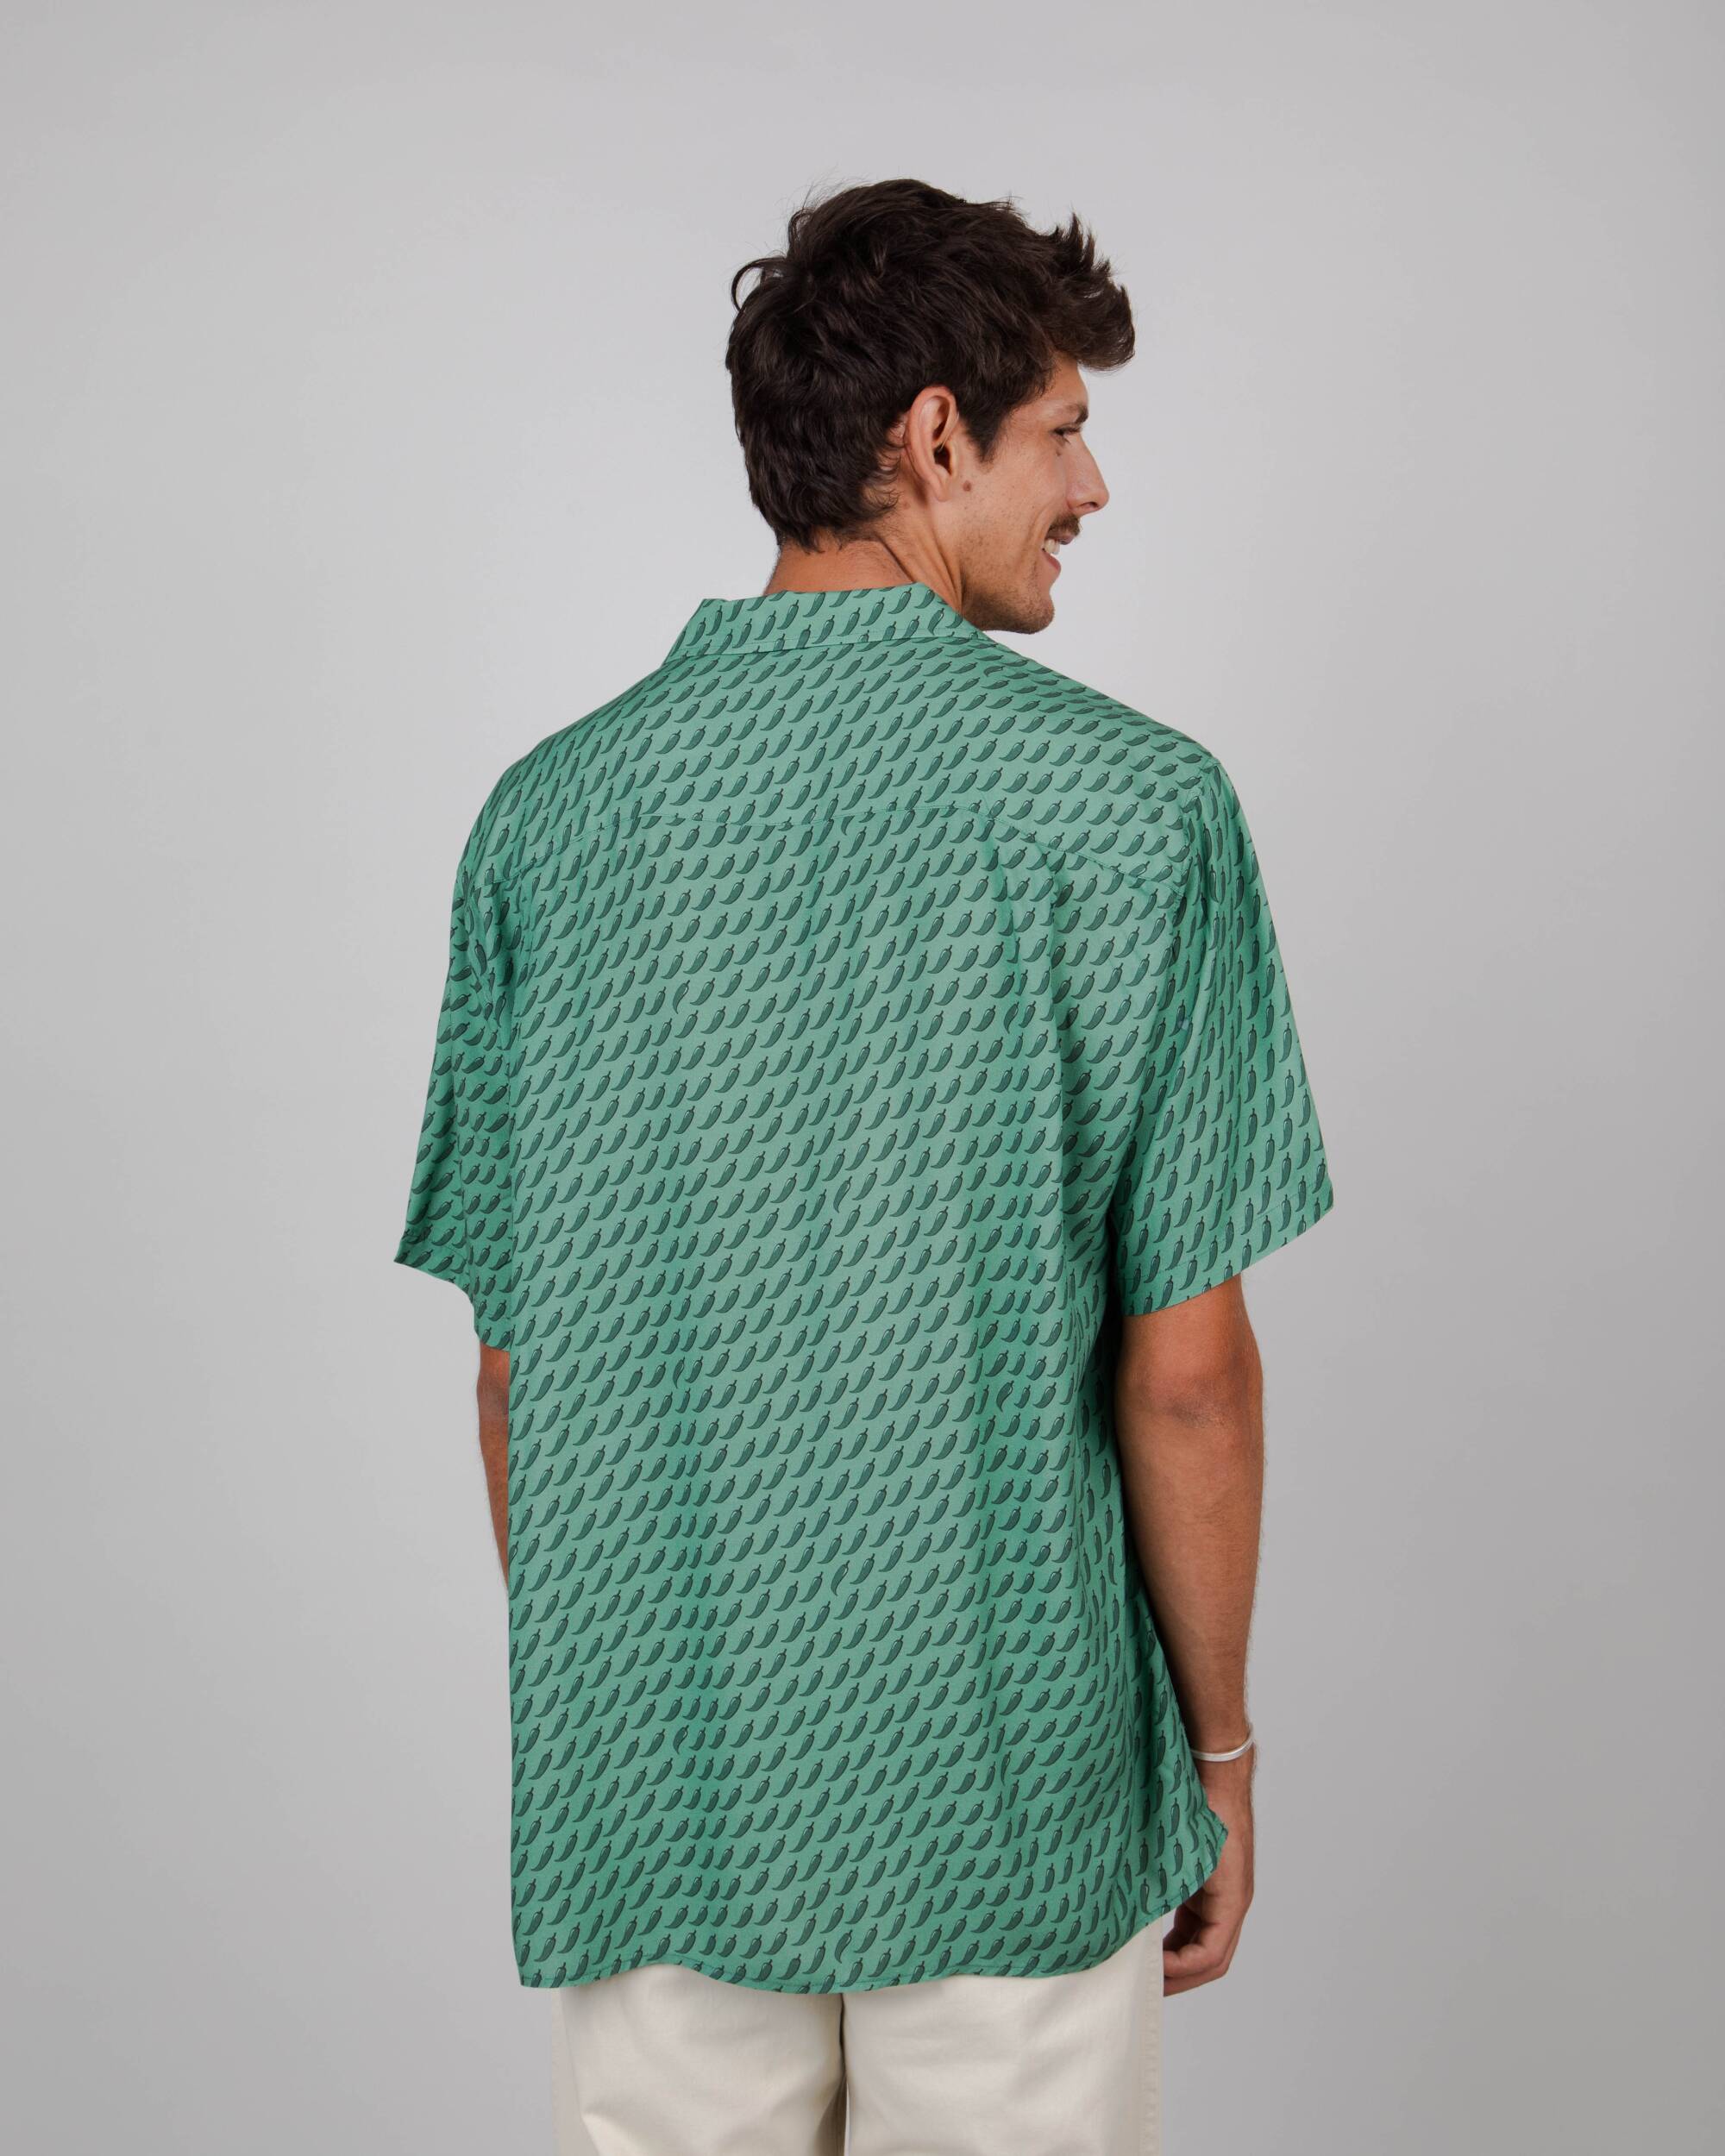 Grünes, kurzärmliges Hemd Chilli Aloha aus 100% Viskose von Brava Fabrics